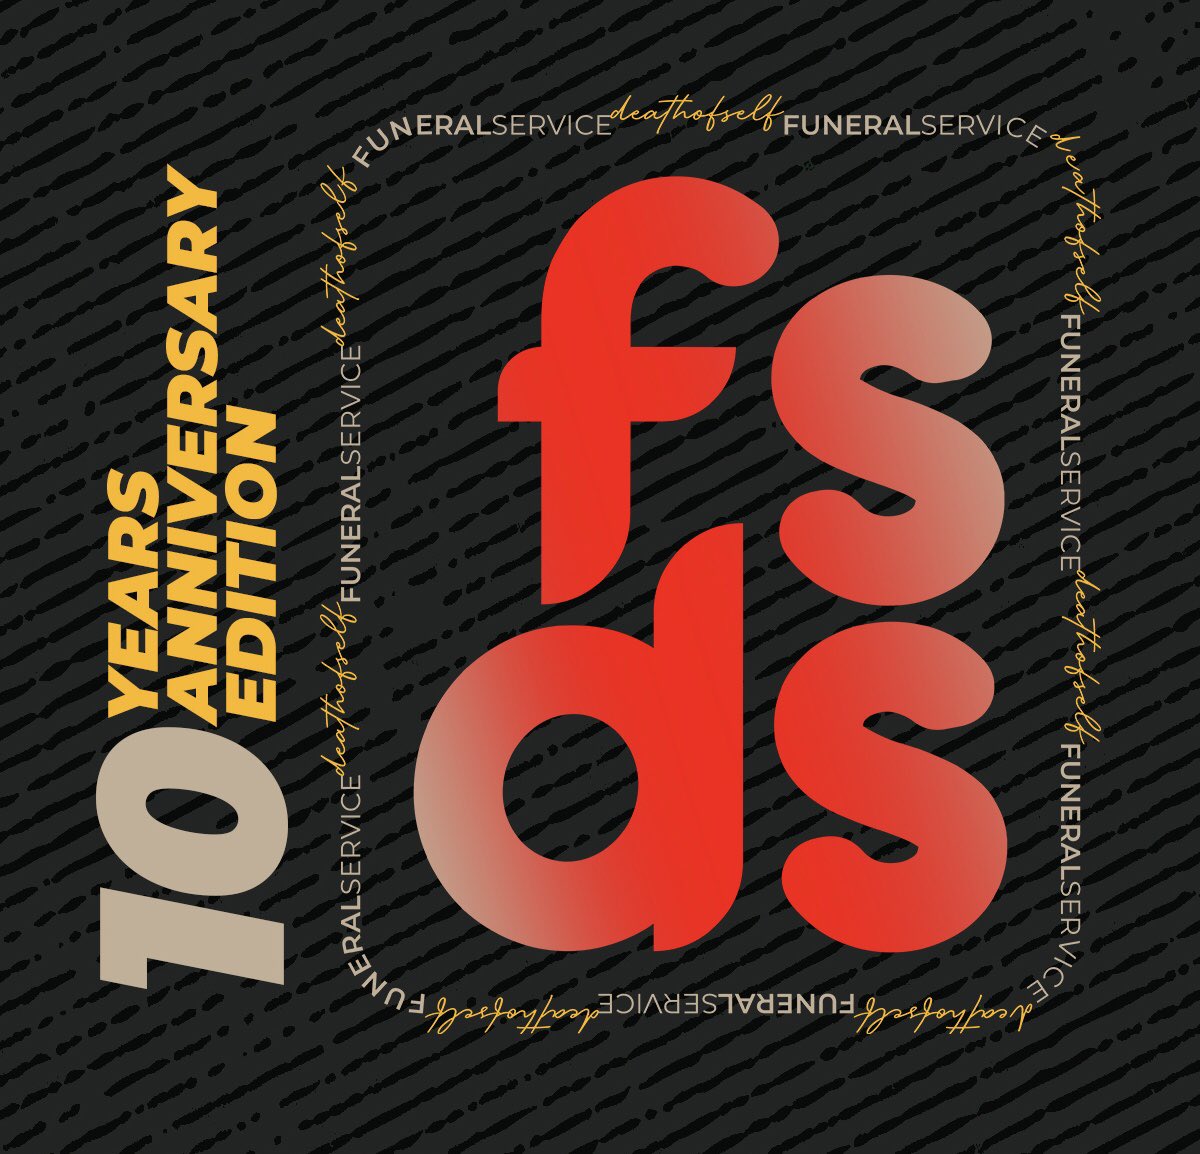 FSDS IS 10 Guys🎊🎊
#FSDS #FSDSX #FuneralService #GospelHiphop #Concerts